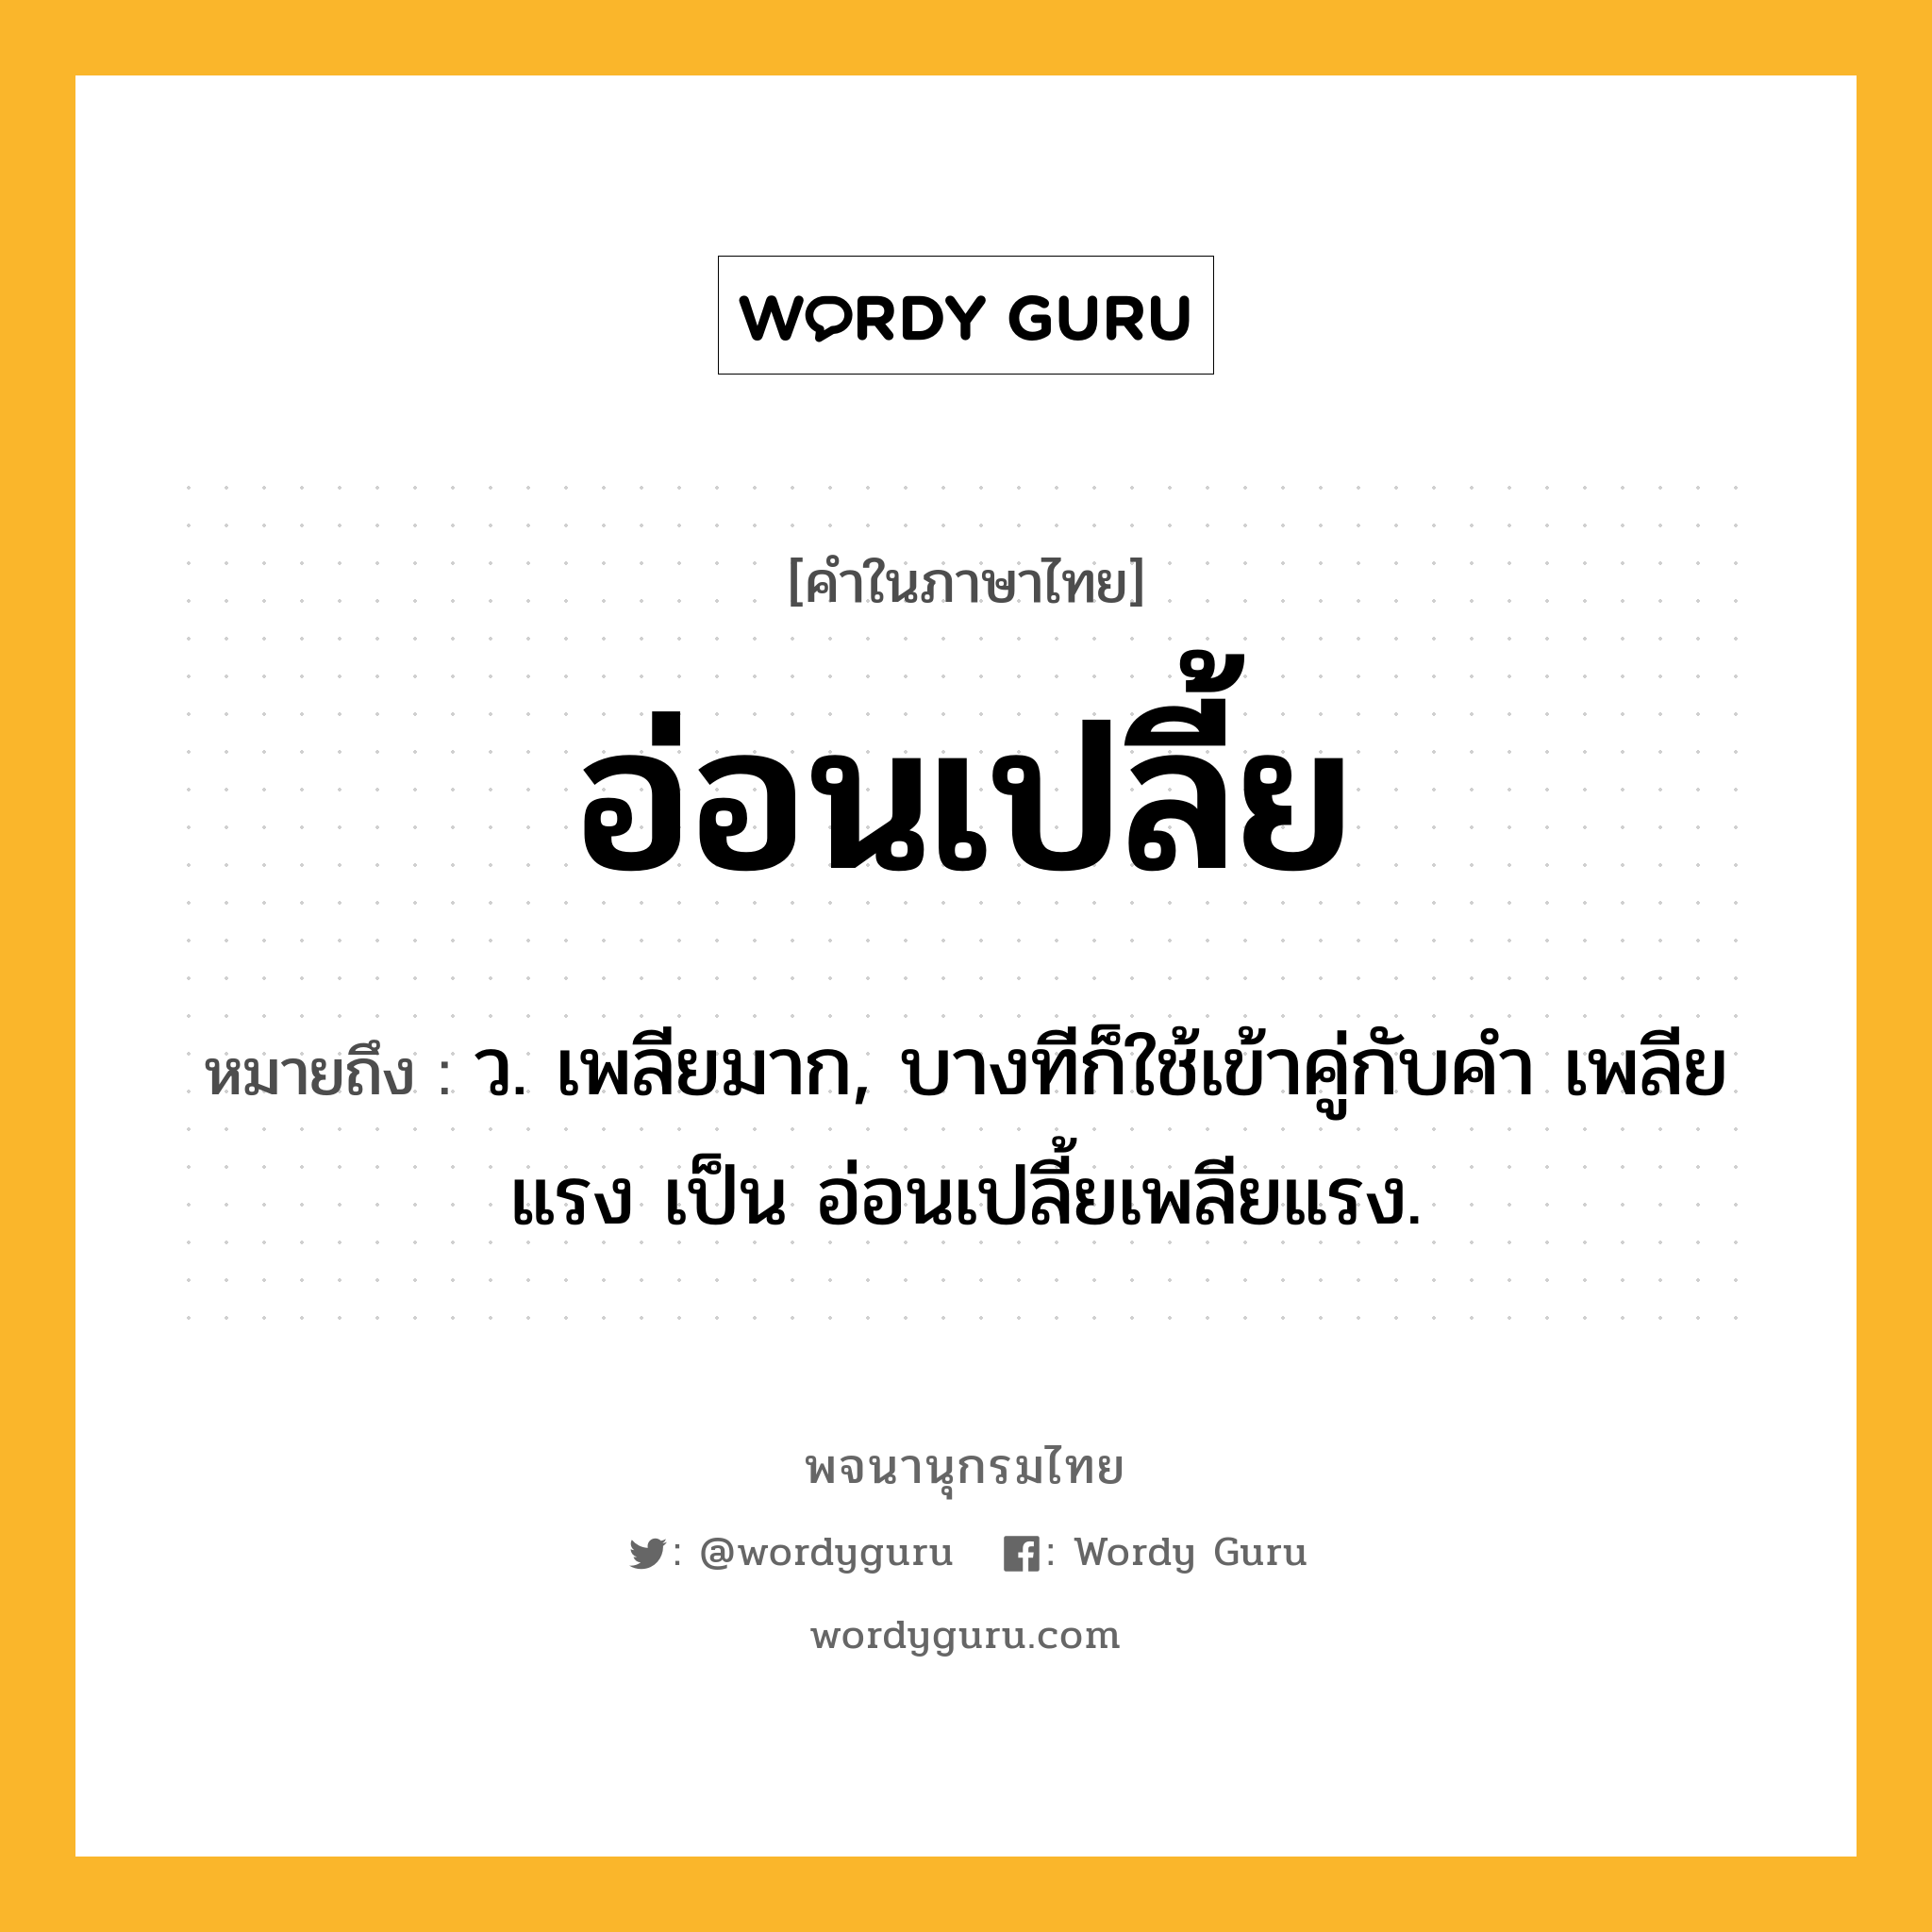 อ่อนเปลี้ย หมายถึงอะไร?, คำในภาษาไทย อ่อนเปลี้ย หมายถึง ว. เพลียมาก, บางทีก็ใช้เข้าคู่กับคำ เพลียแรง เป็น อ่อนเปลี้ยเพลียแรง.